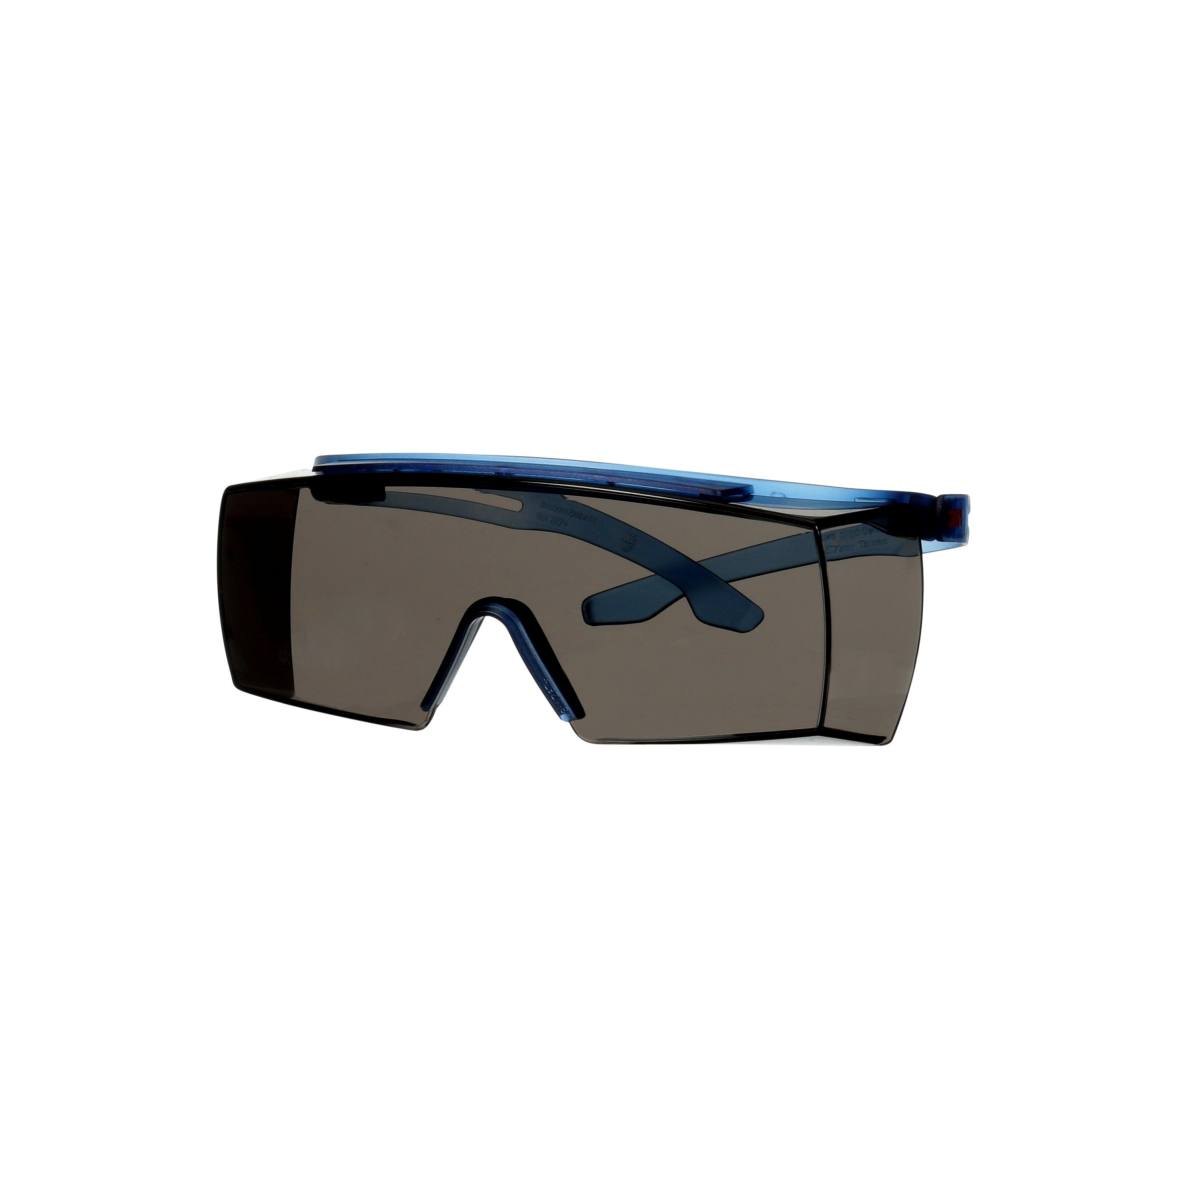 3M SecureFit 3700 over spectacles, blue temples, Scotchgard anti-fog coating (K&amp;N), grey lens, angle adjustable, SF3702SGAF-BLU-EU